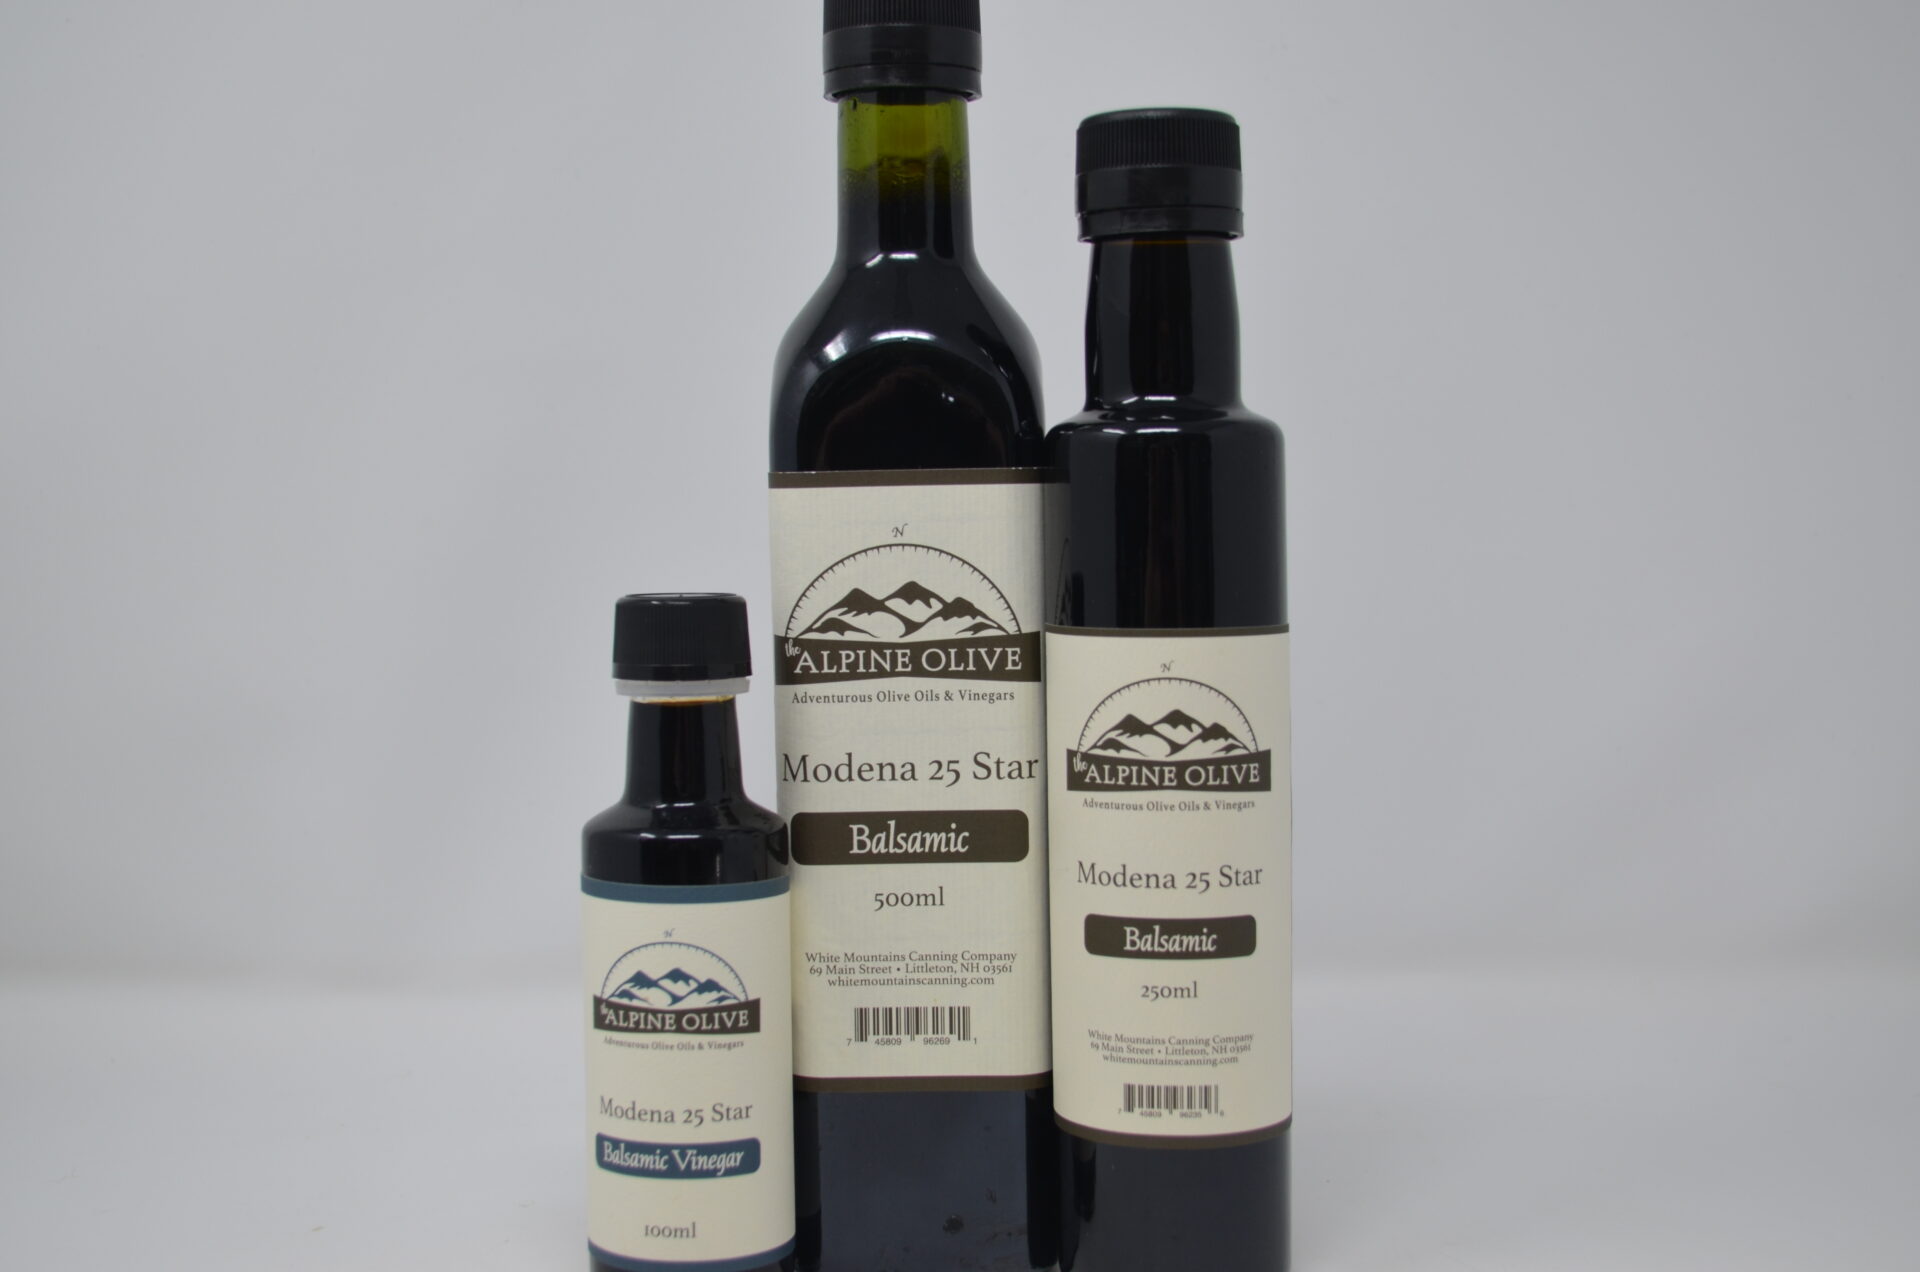 Three bottles of balsamic vinegar are shown.